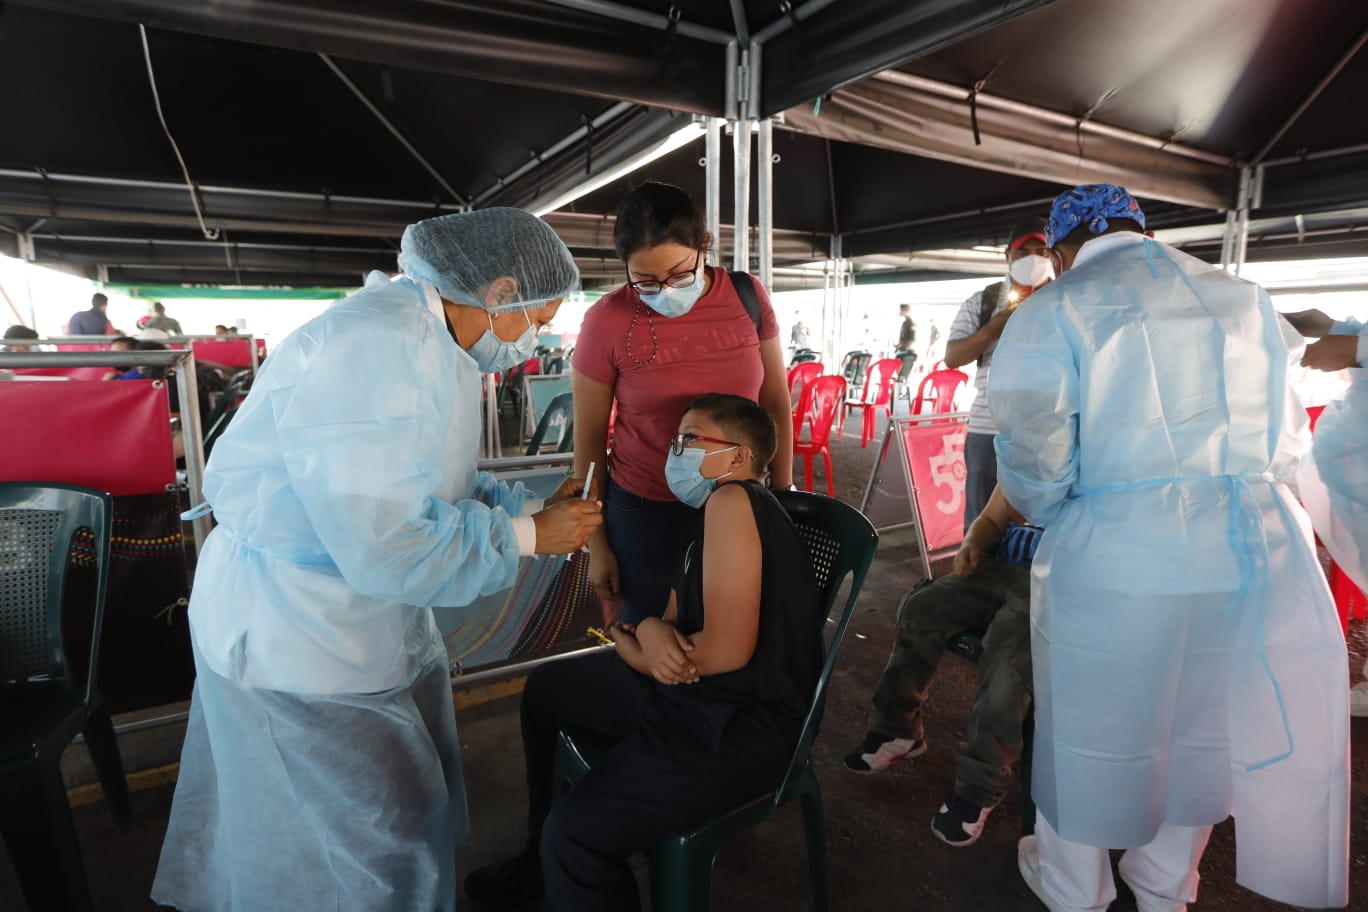 El Ministerio de Salud tiene previsto recibir vacunas contra el Covid-19 para adminsitrar en niños y niñas. (Foto: Prensa Libre. Hemeroteca)